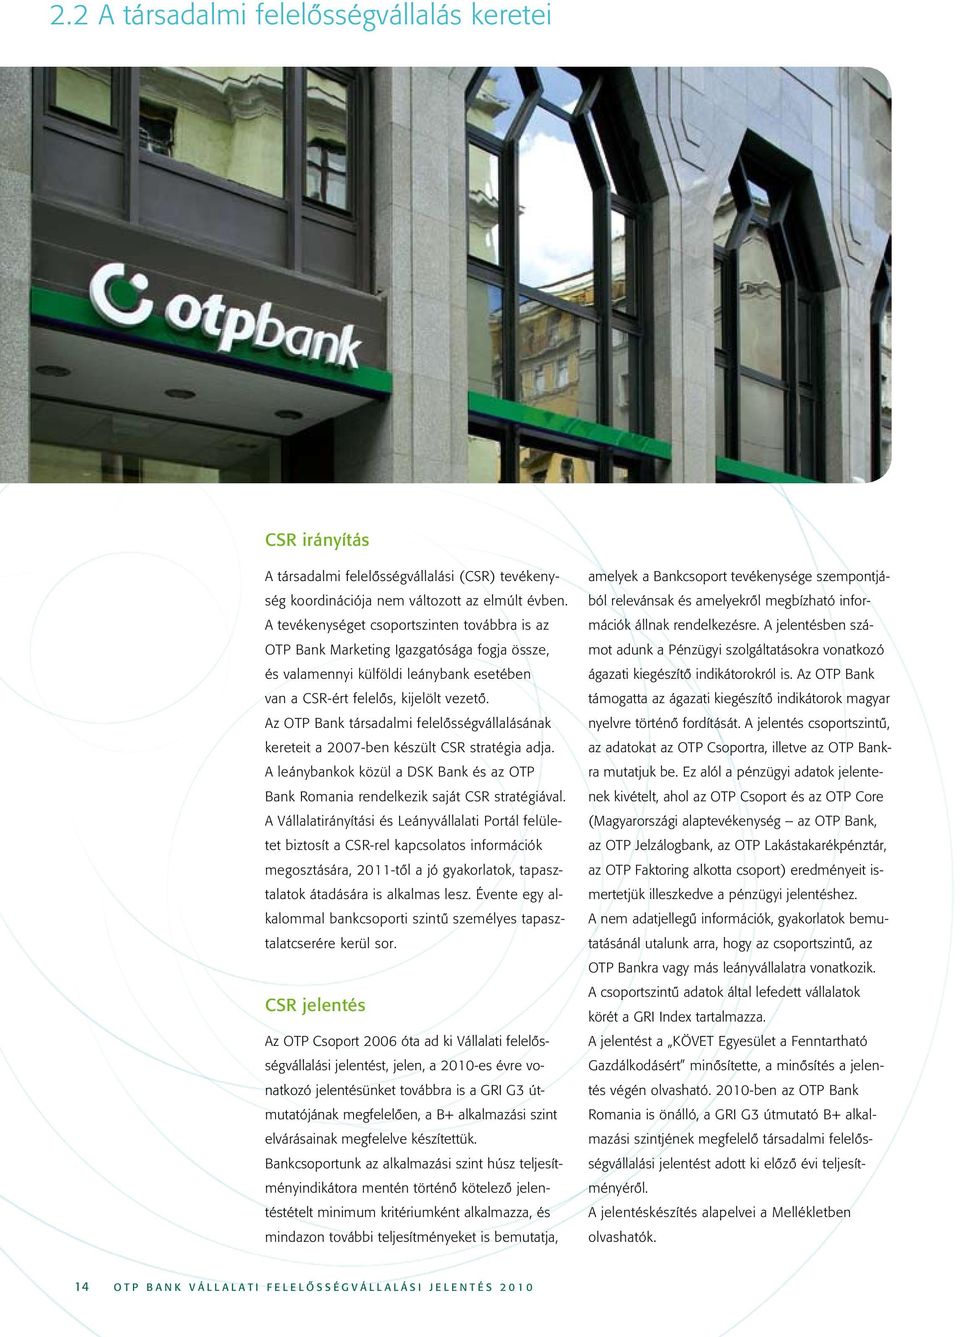 Az OTP Bank társadalmi felelôsségvállalásának kereteit a 2007-ben készült CSR stratégia adja. A leánybankok közül a DSK Bank és az OTP Bank Romania rendelkezik saját CSR stratégiával.